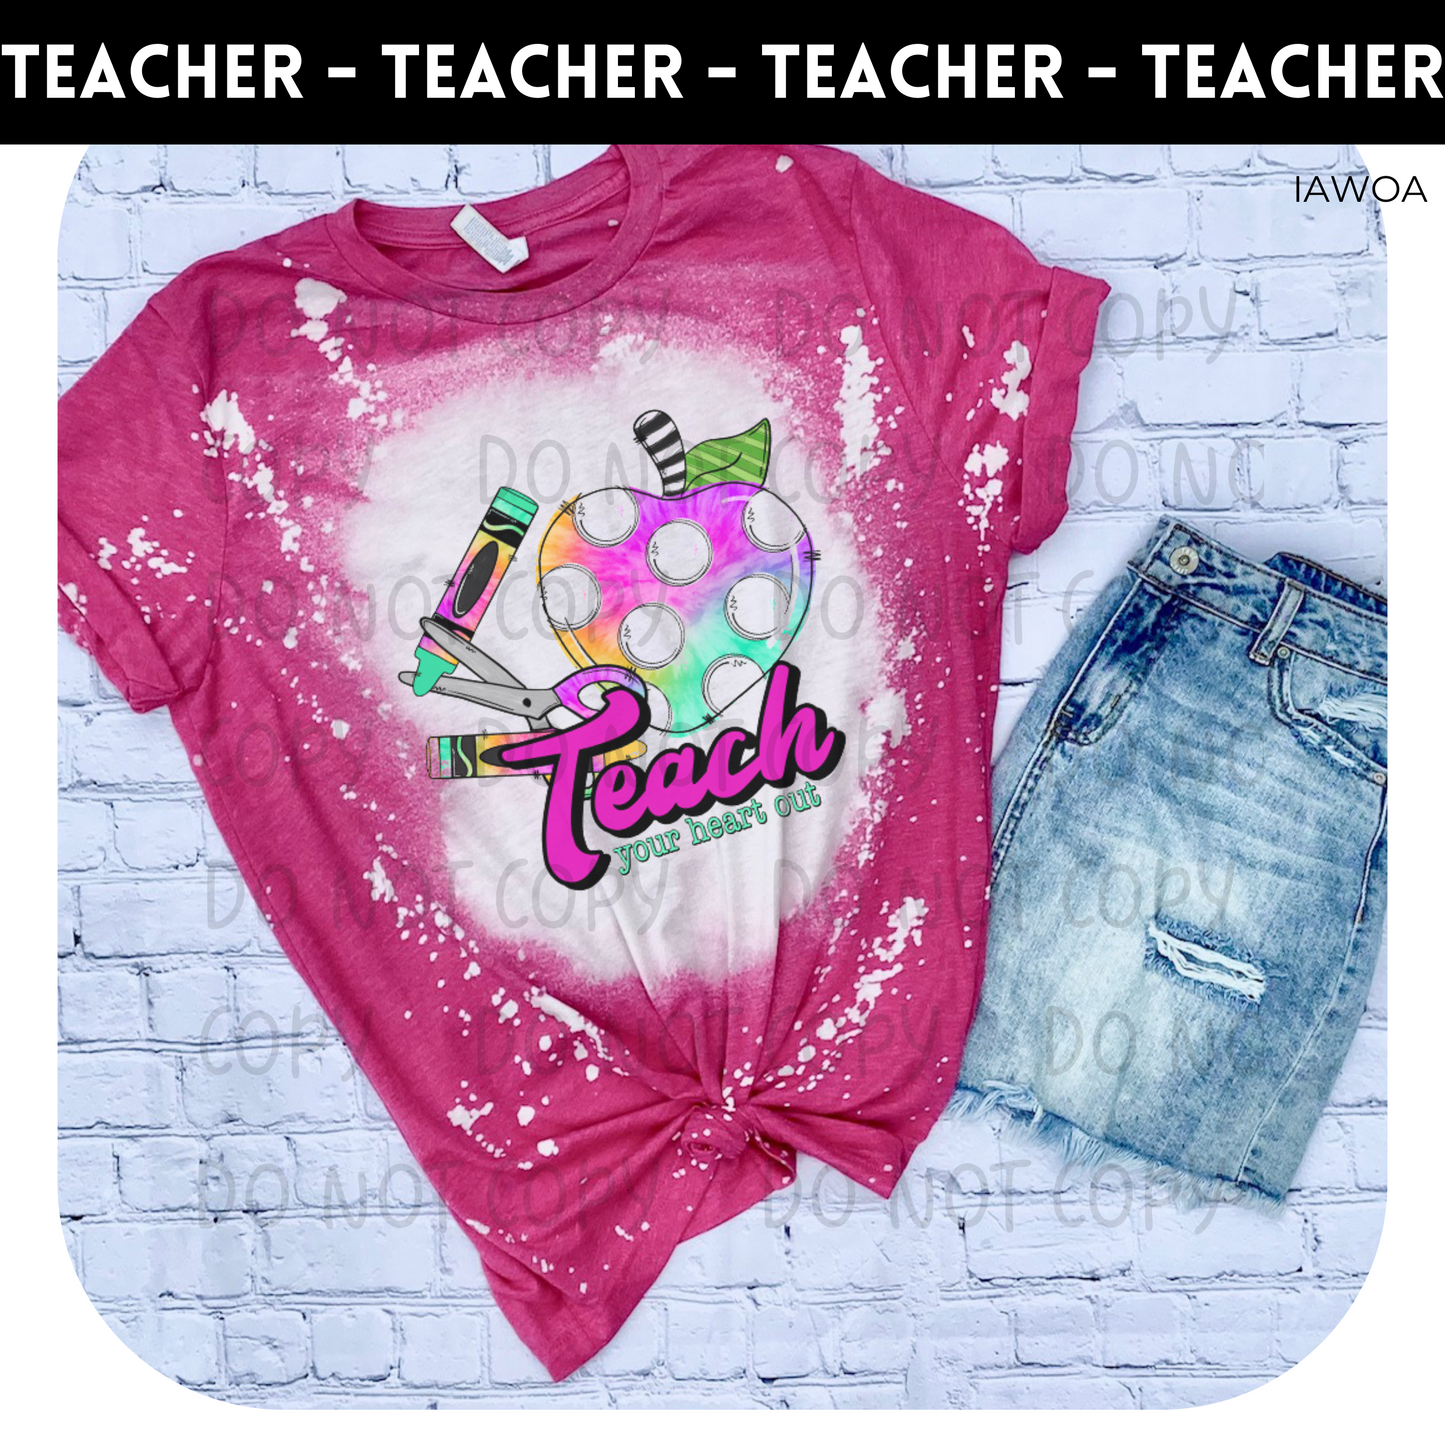 Teach Your Heart Out Bleached Adult Shirt- Teacher 225